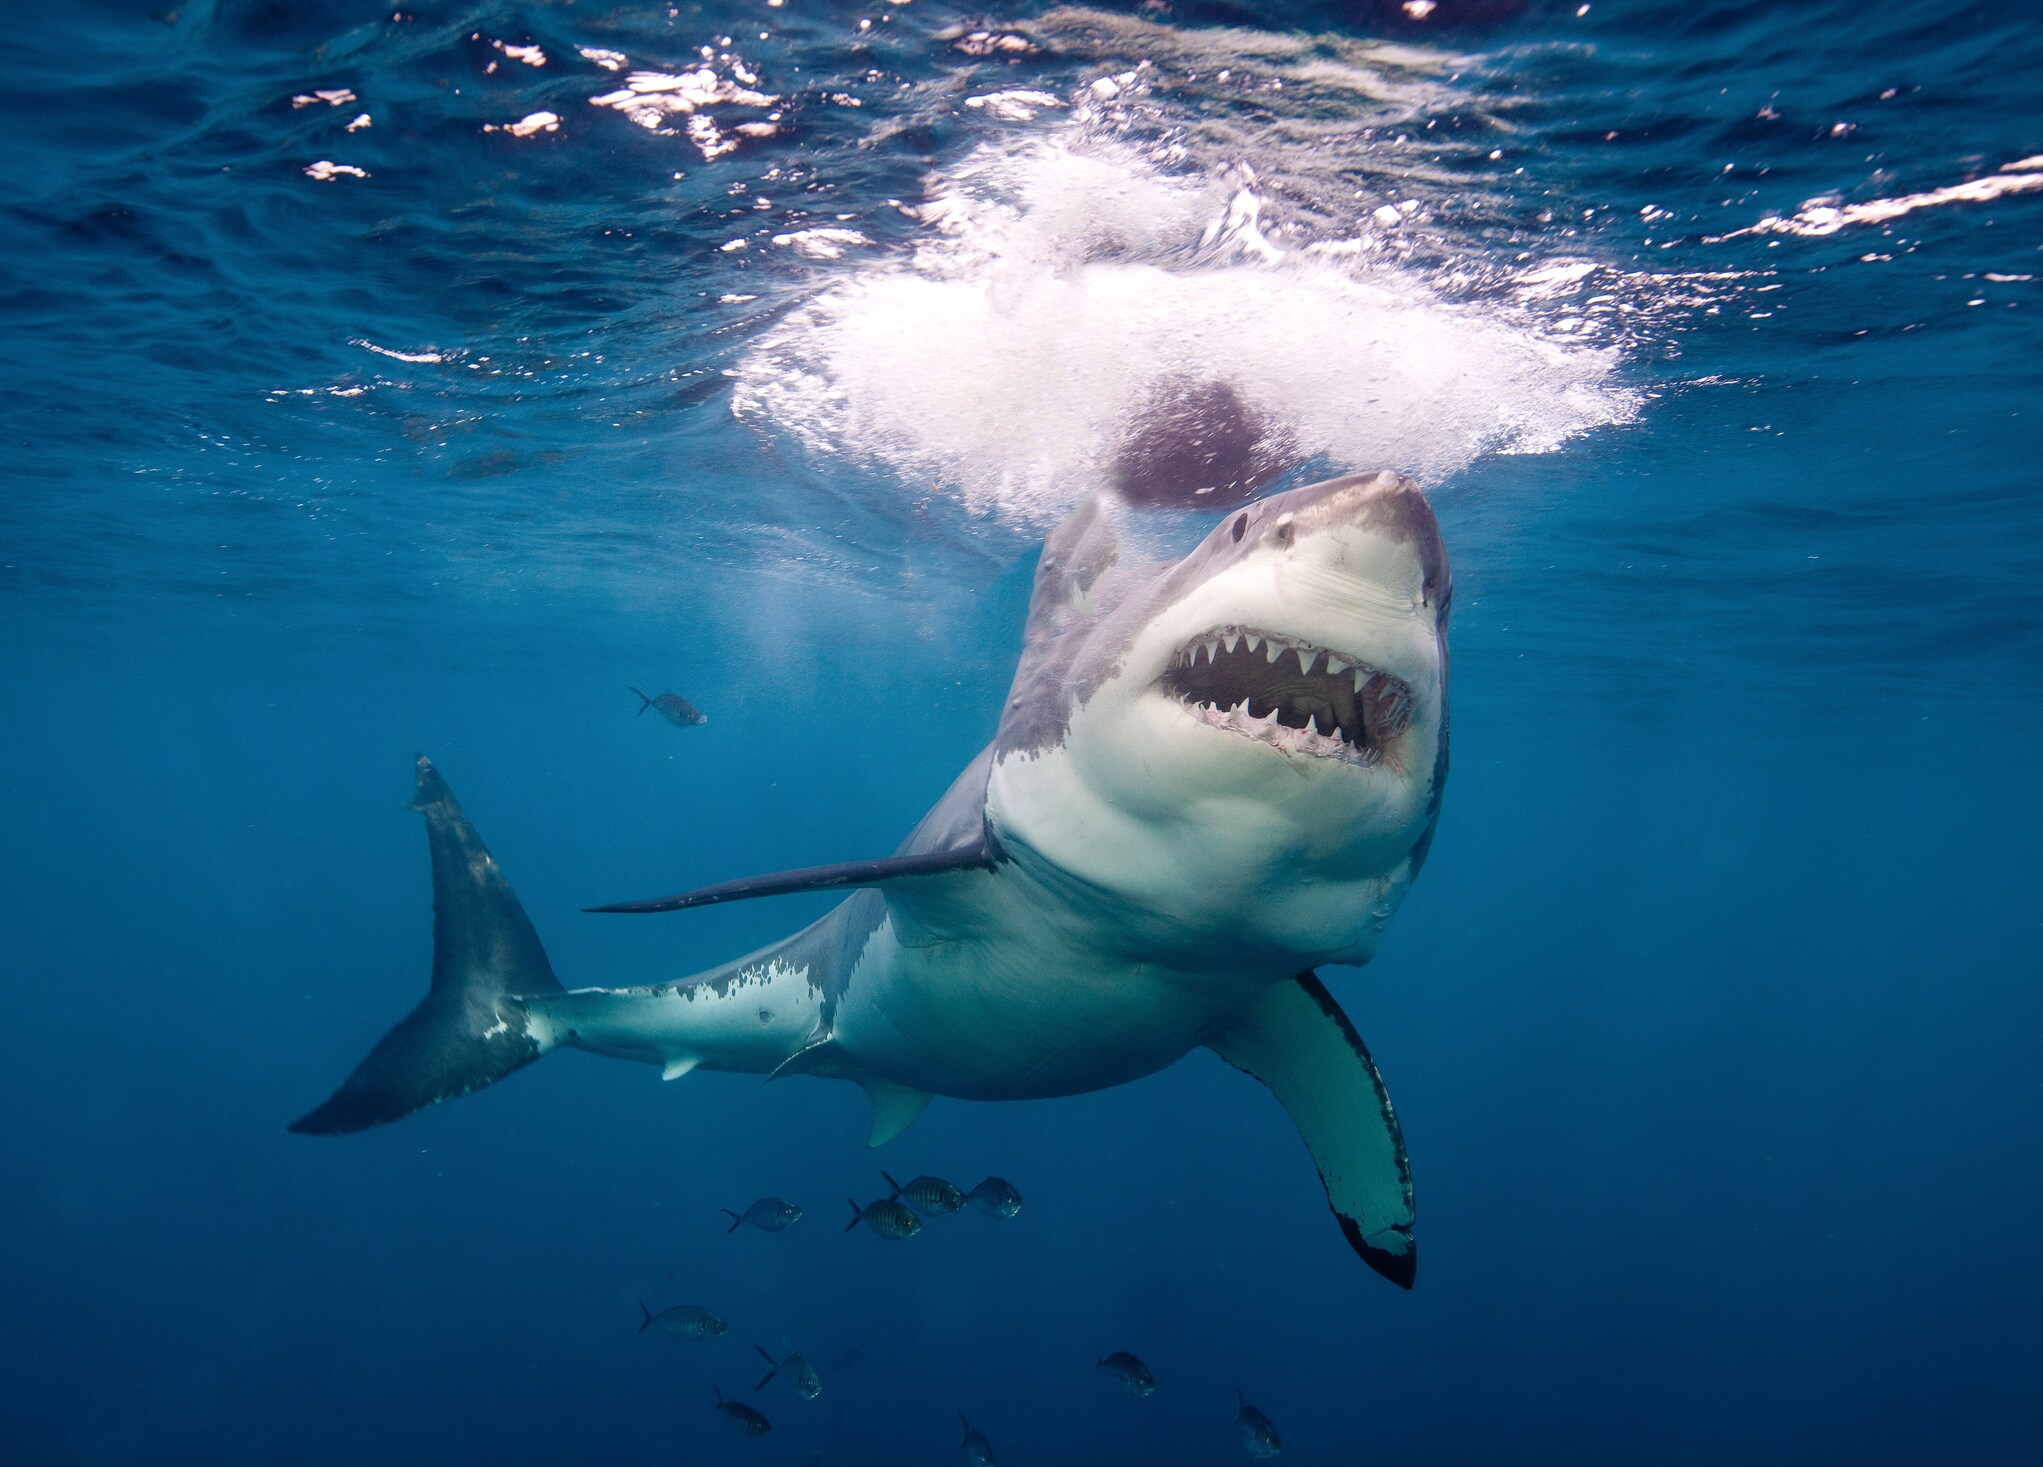 Koudwatervrees van haai is zegen voor zeehond